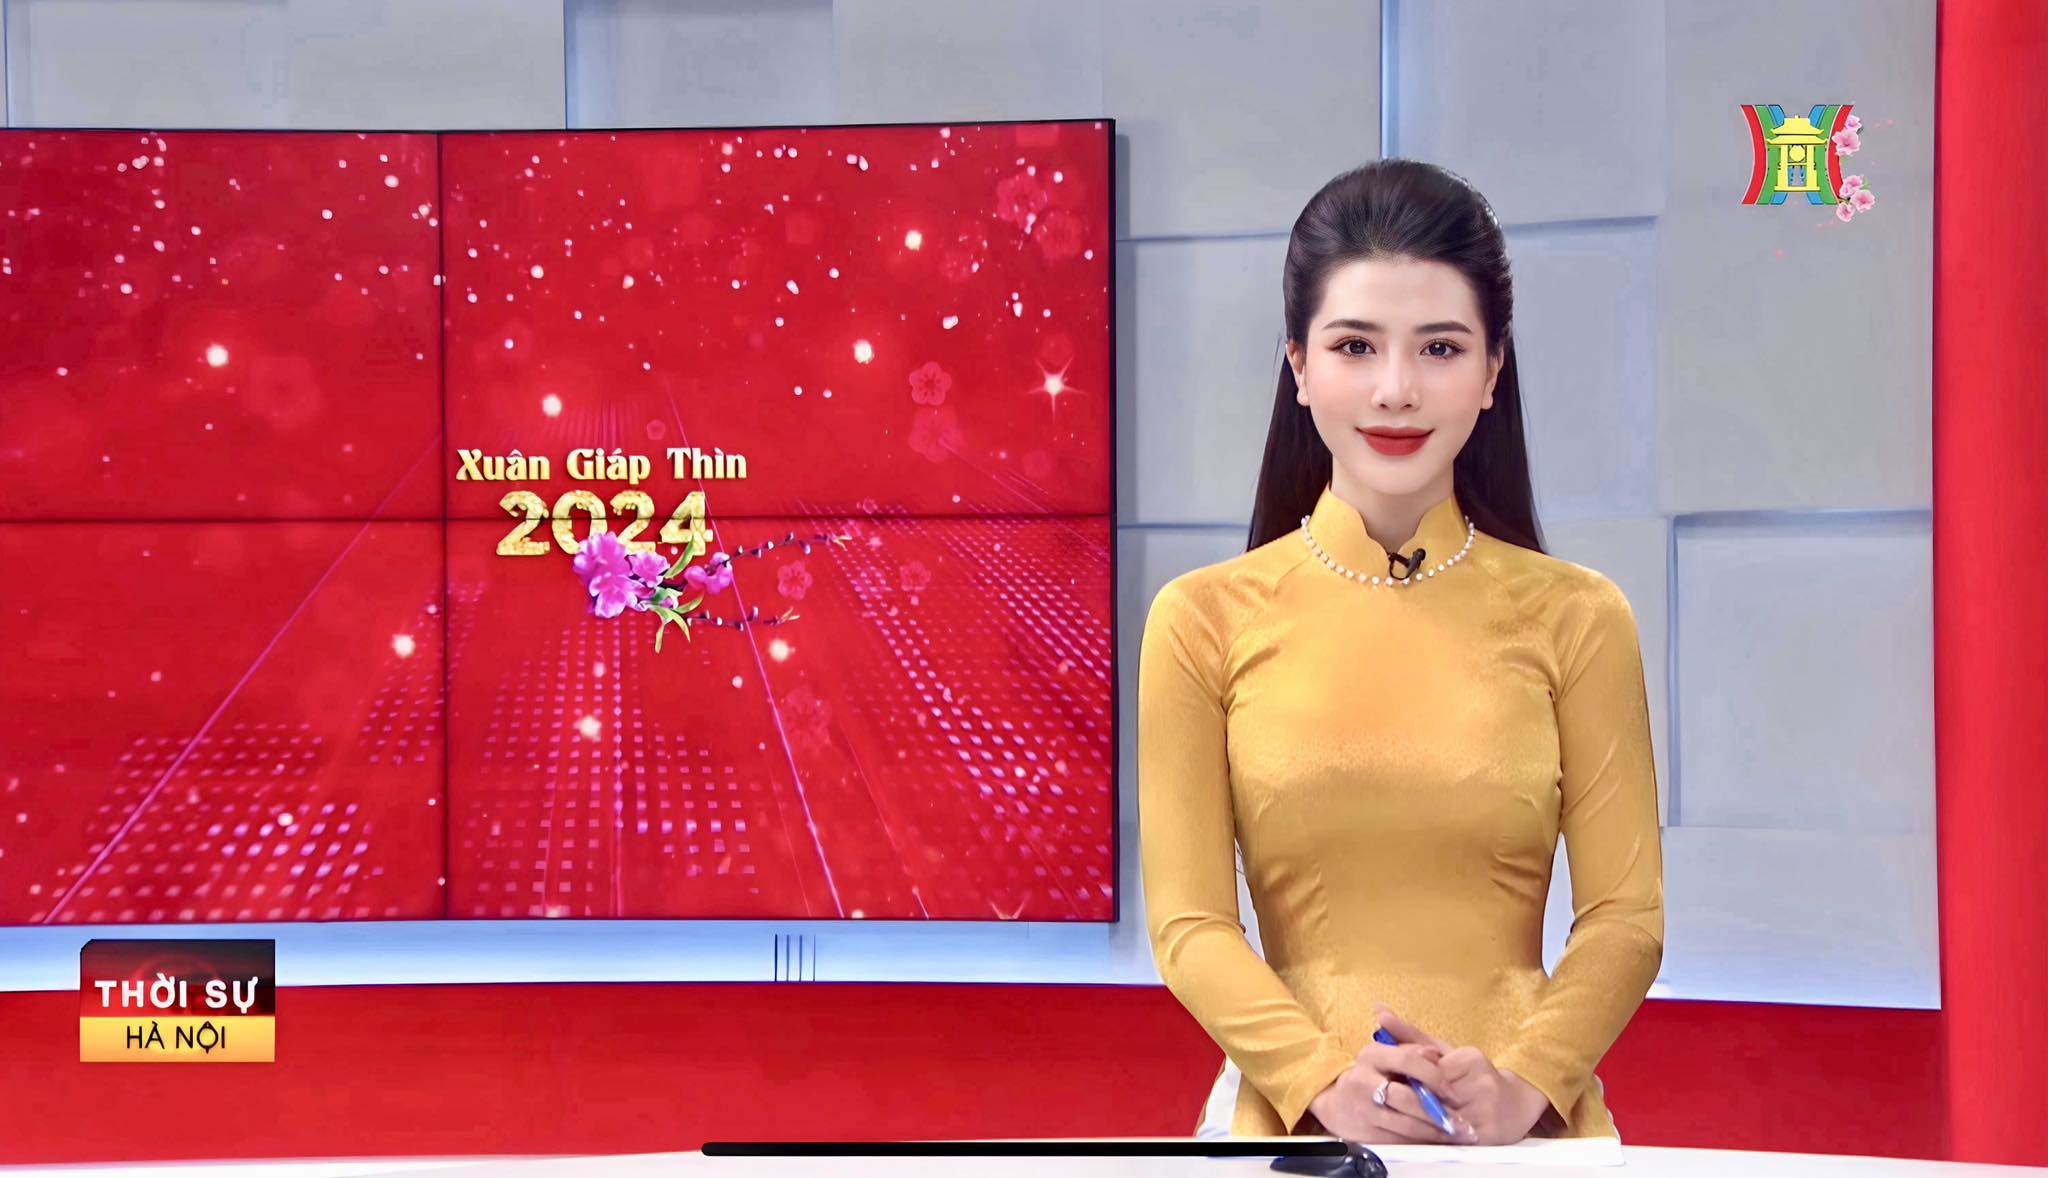 Trước đó, Như Quỳnh từng có kinh nghiệm dẫn MC cho Đài VTV, VTC... Nhờ lợi thế ngoại hình đẹp cùng khả năng ăn nói lưu loát, Như Quỳnh tham gia cuộc thi Miss & Mister Hà Nội 2023 và giành giải Á khôi 1.